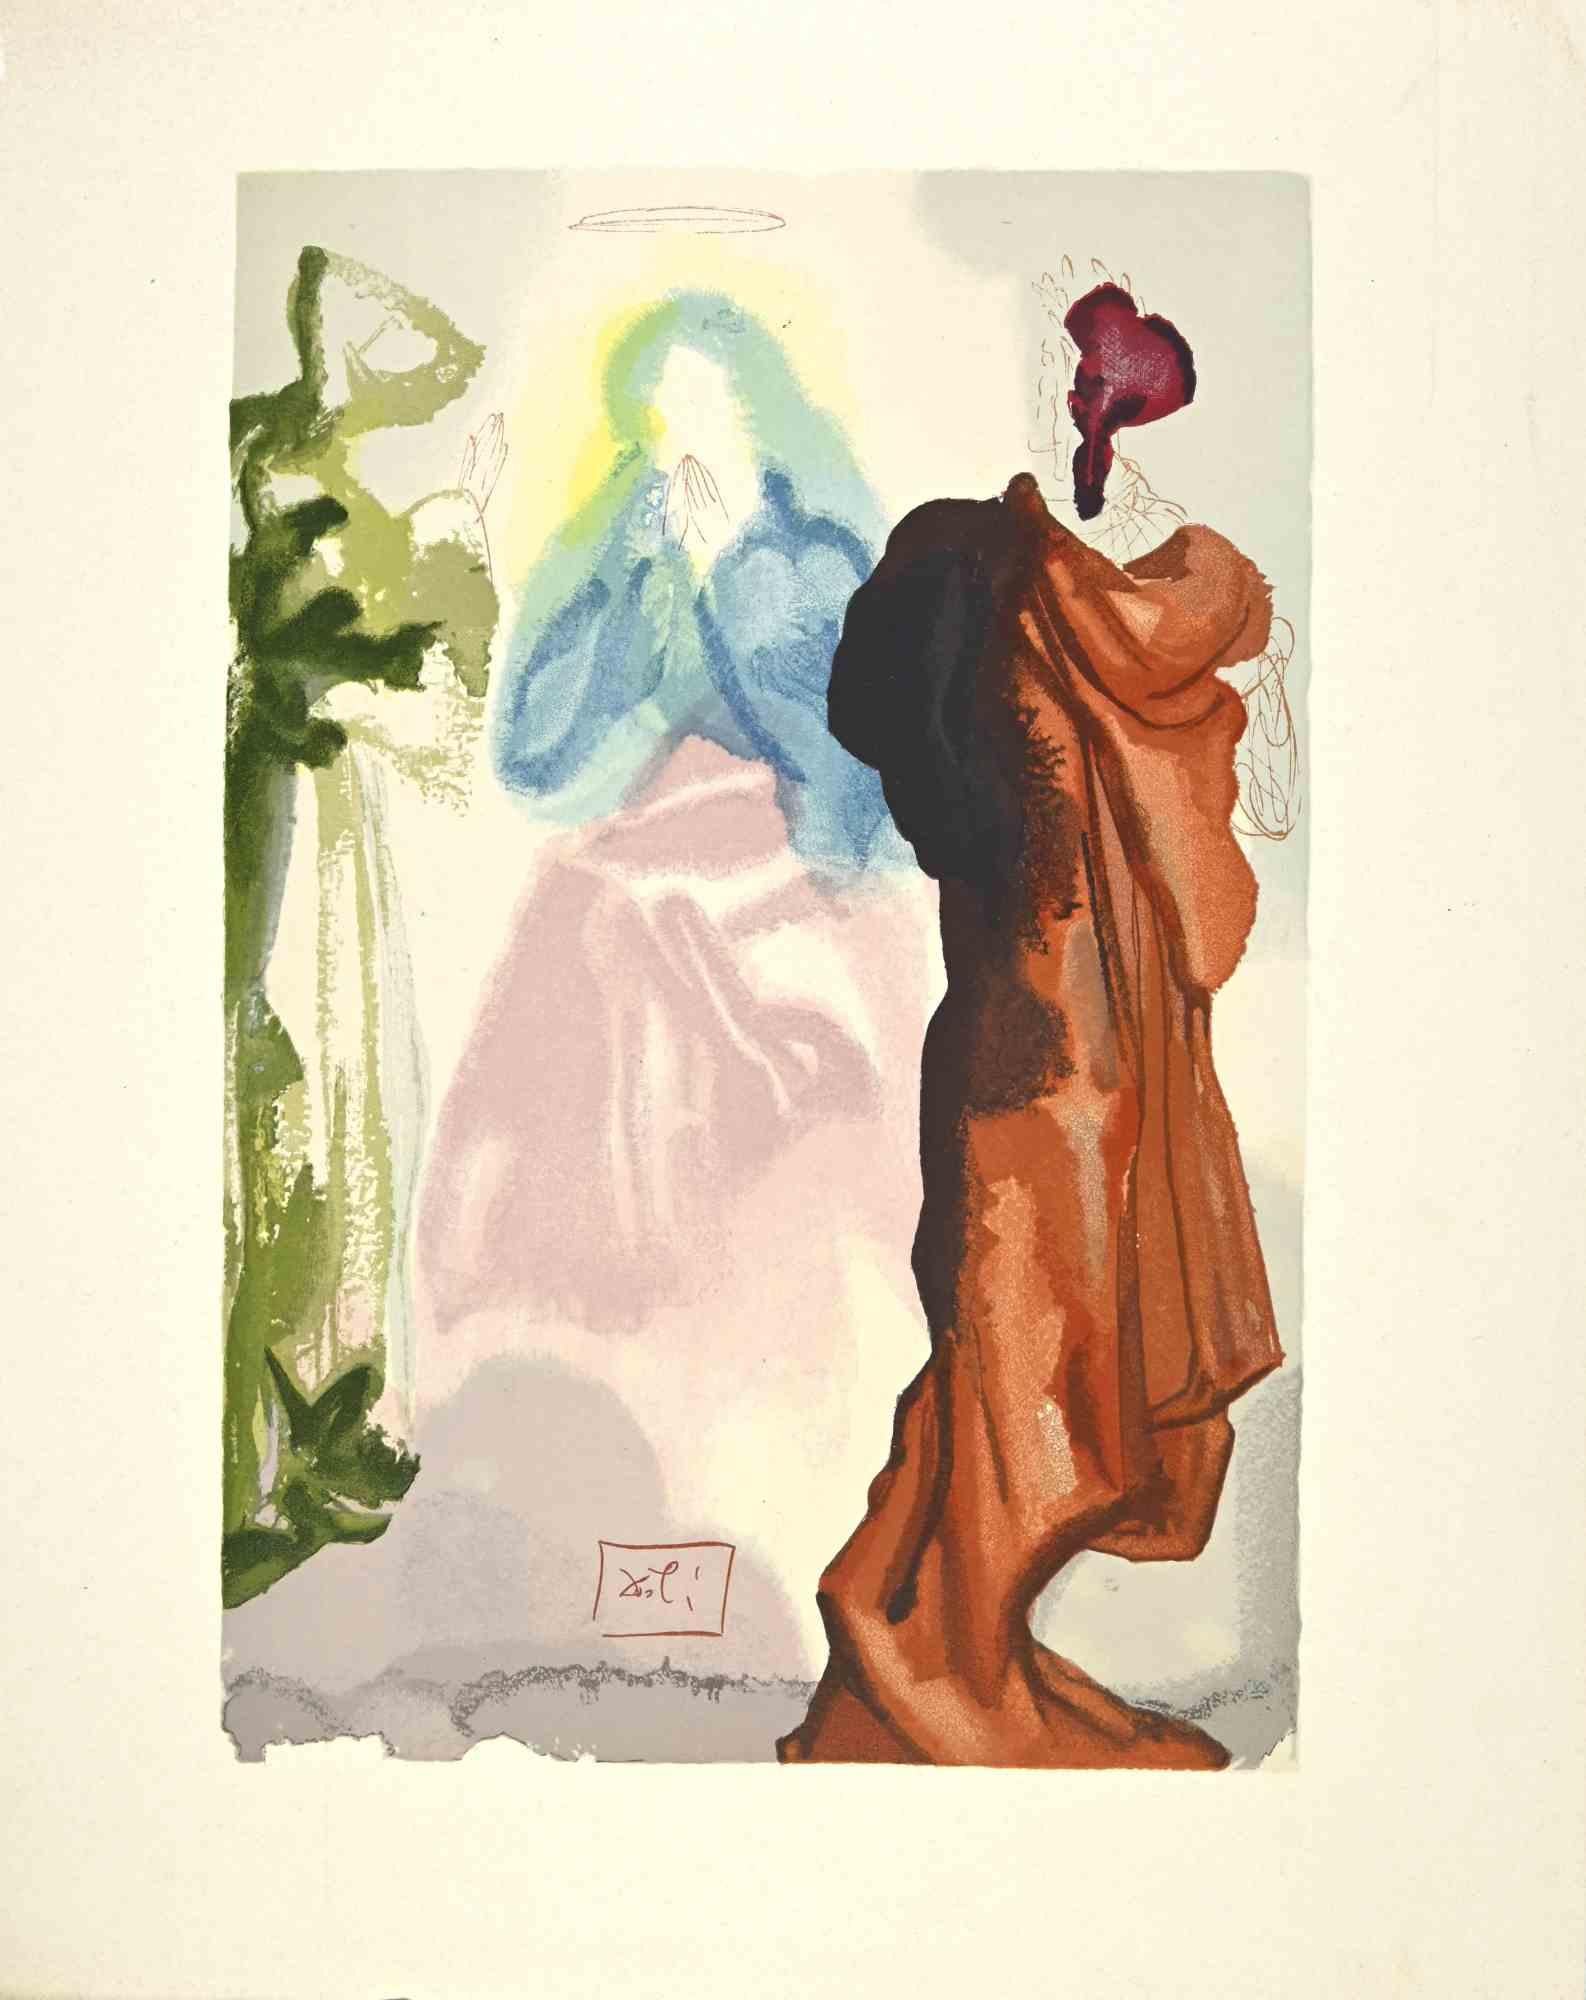 Salvador Dalí Figurative Print - Prayer of Saint Bernard to the Virgin - Woodcut - 1963